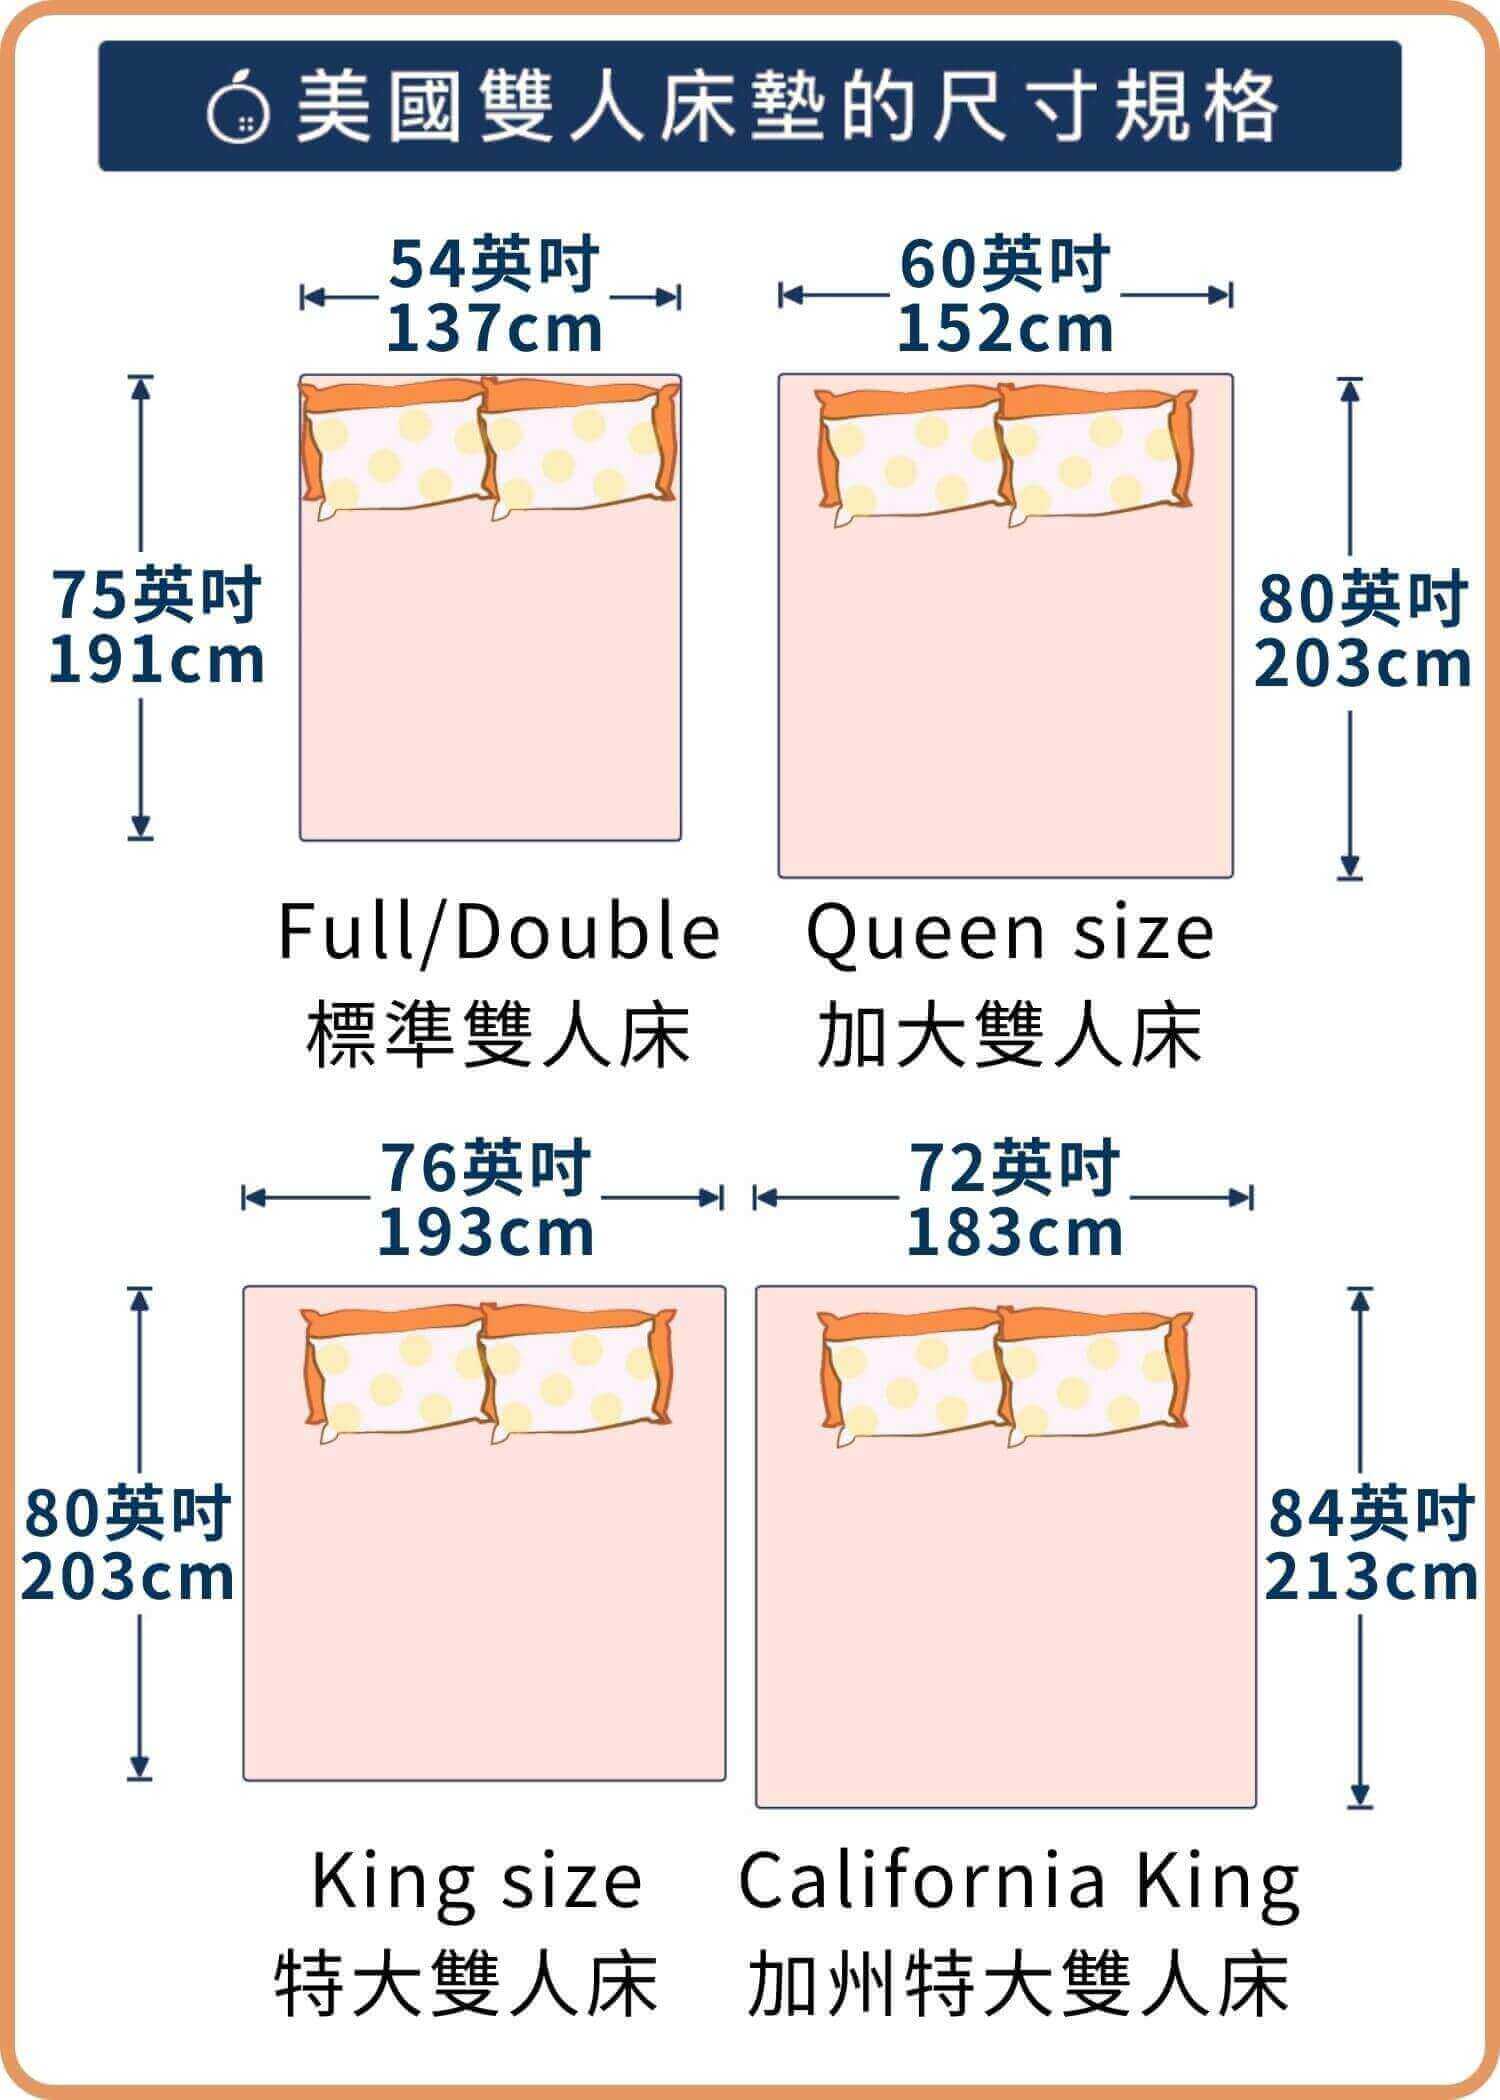 美國雙人床墊尺寸規格